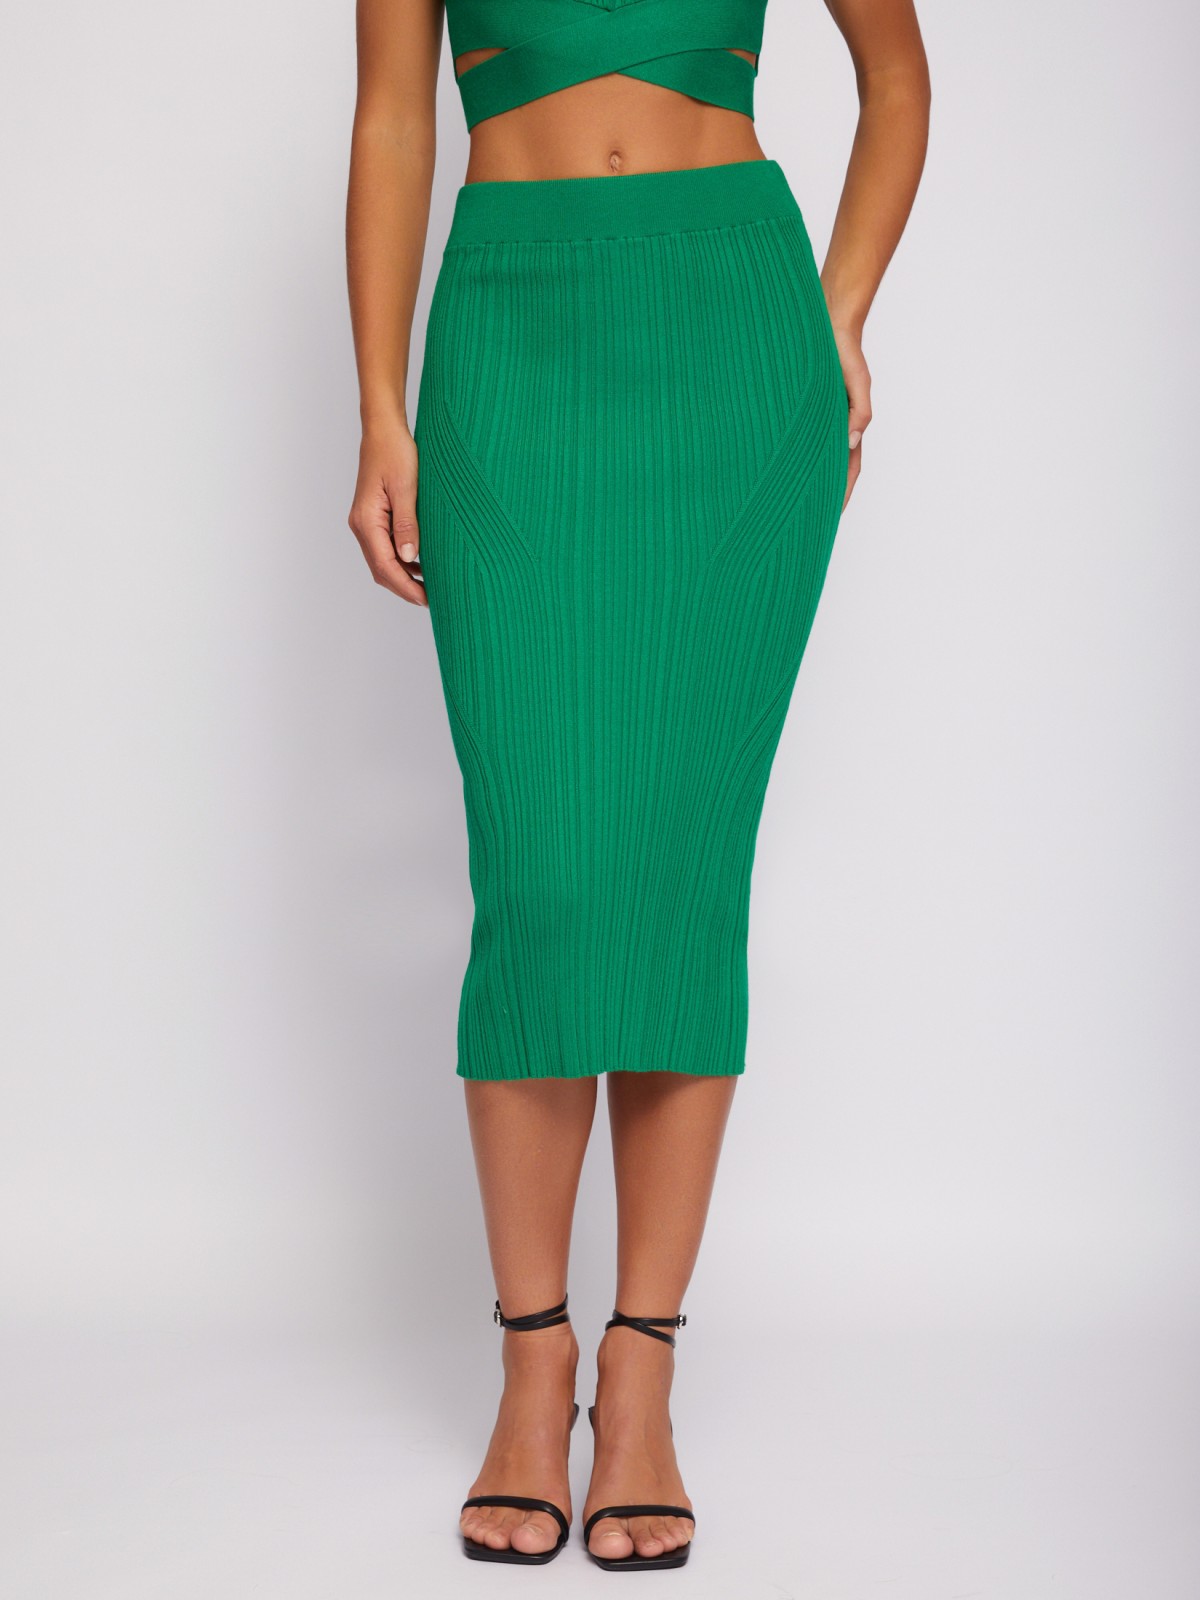 Трикотажная юбка-карандаш длины миди на резинке zolla 024217701031, цвет зеленый, размер L - фото 2